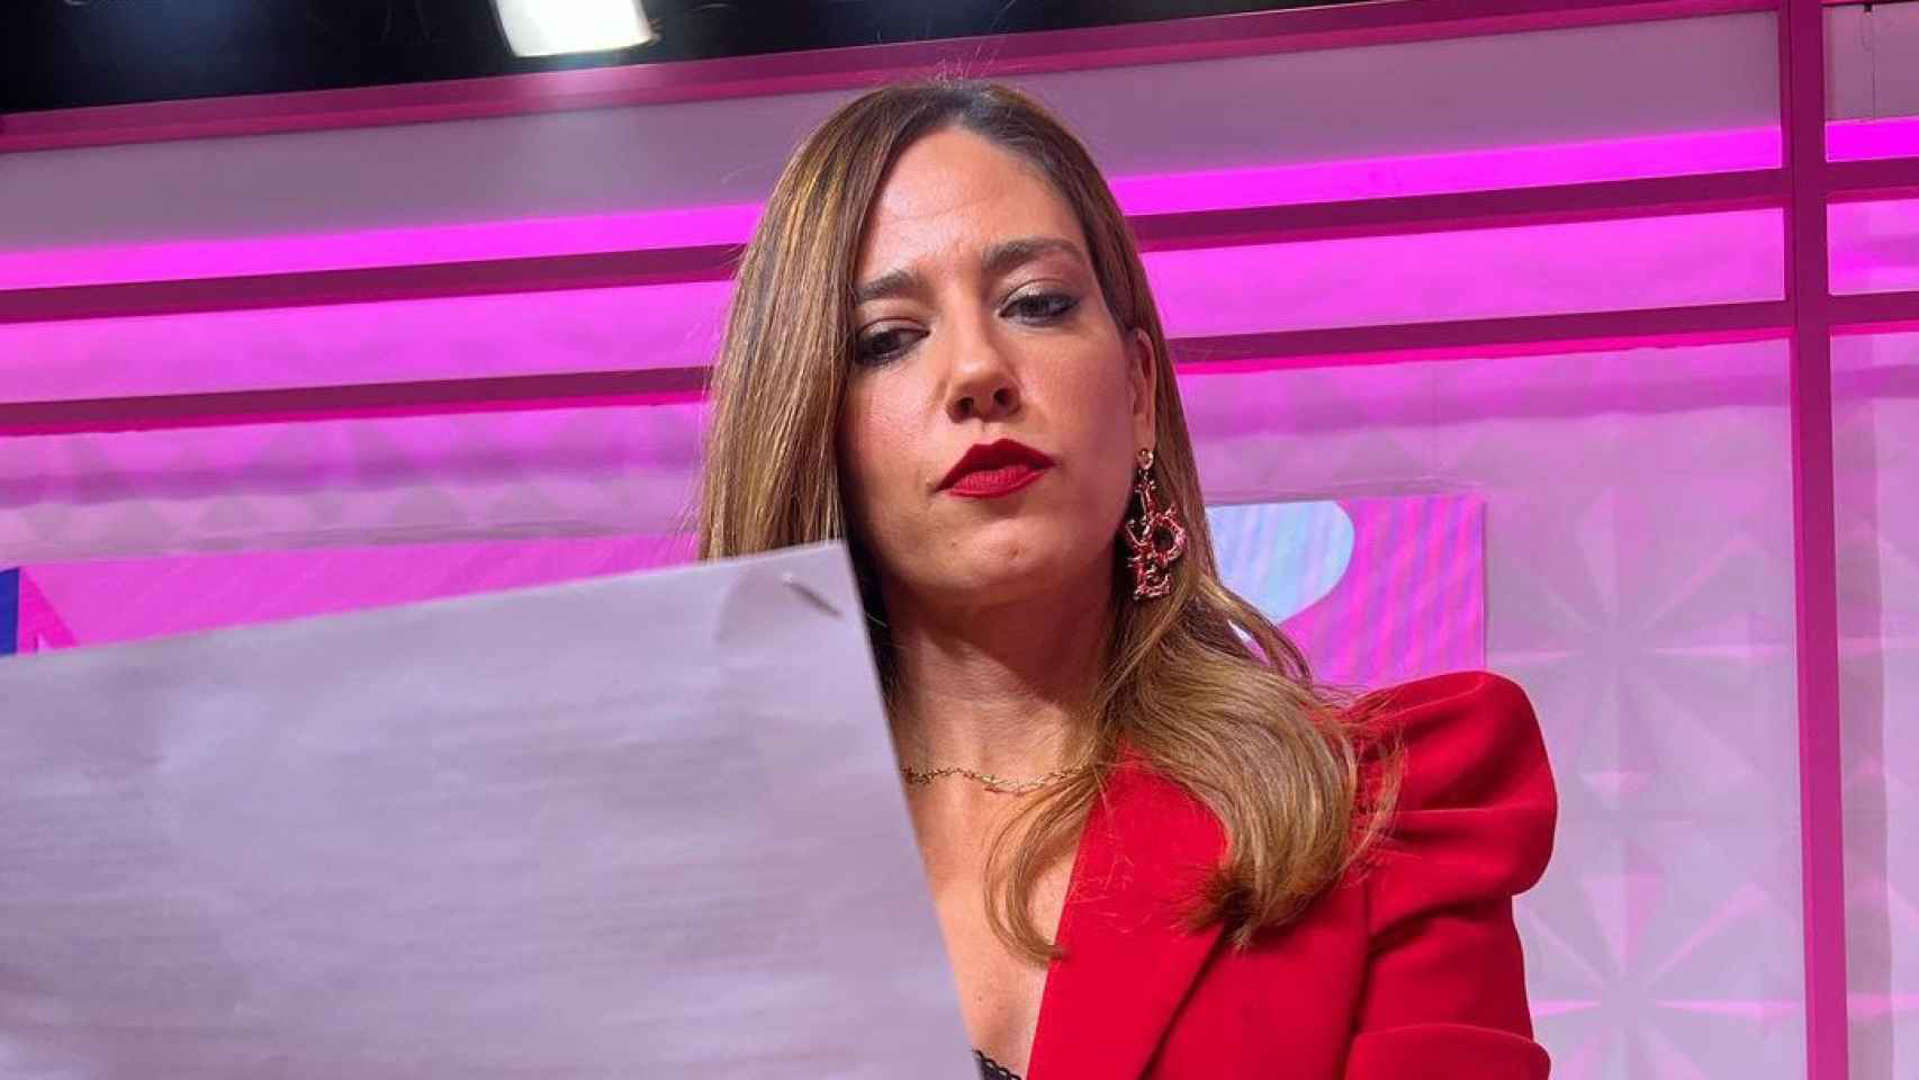 Nuria Marín: Optimismo Tras su Despido de Mediaset y ‘Socialité’